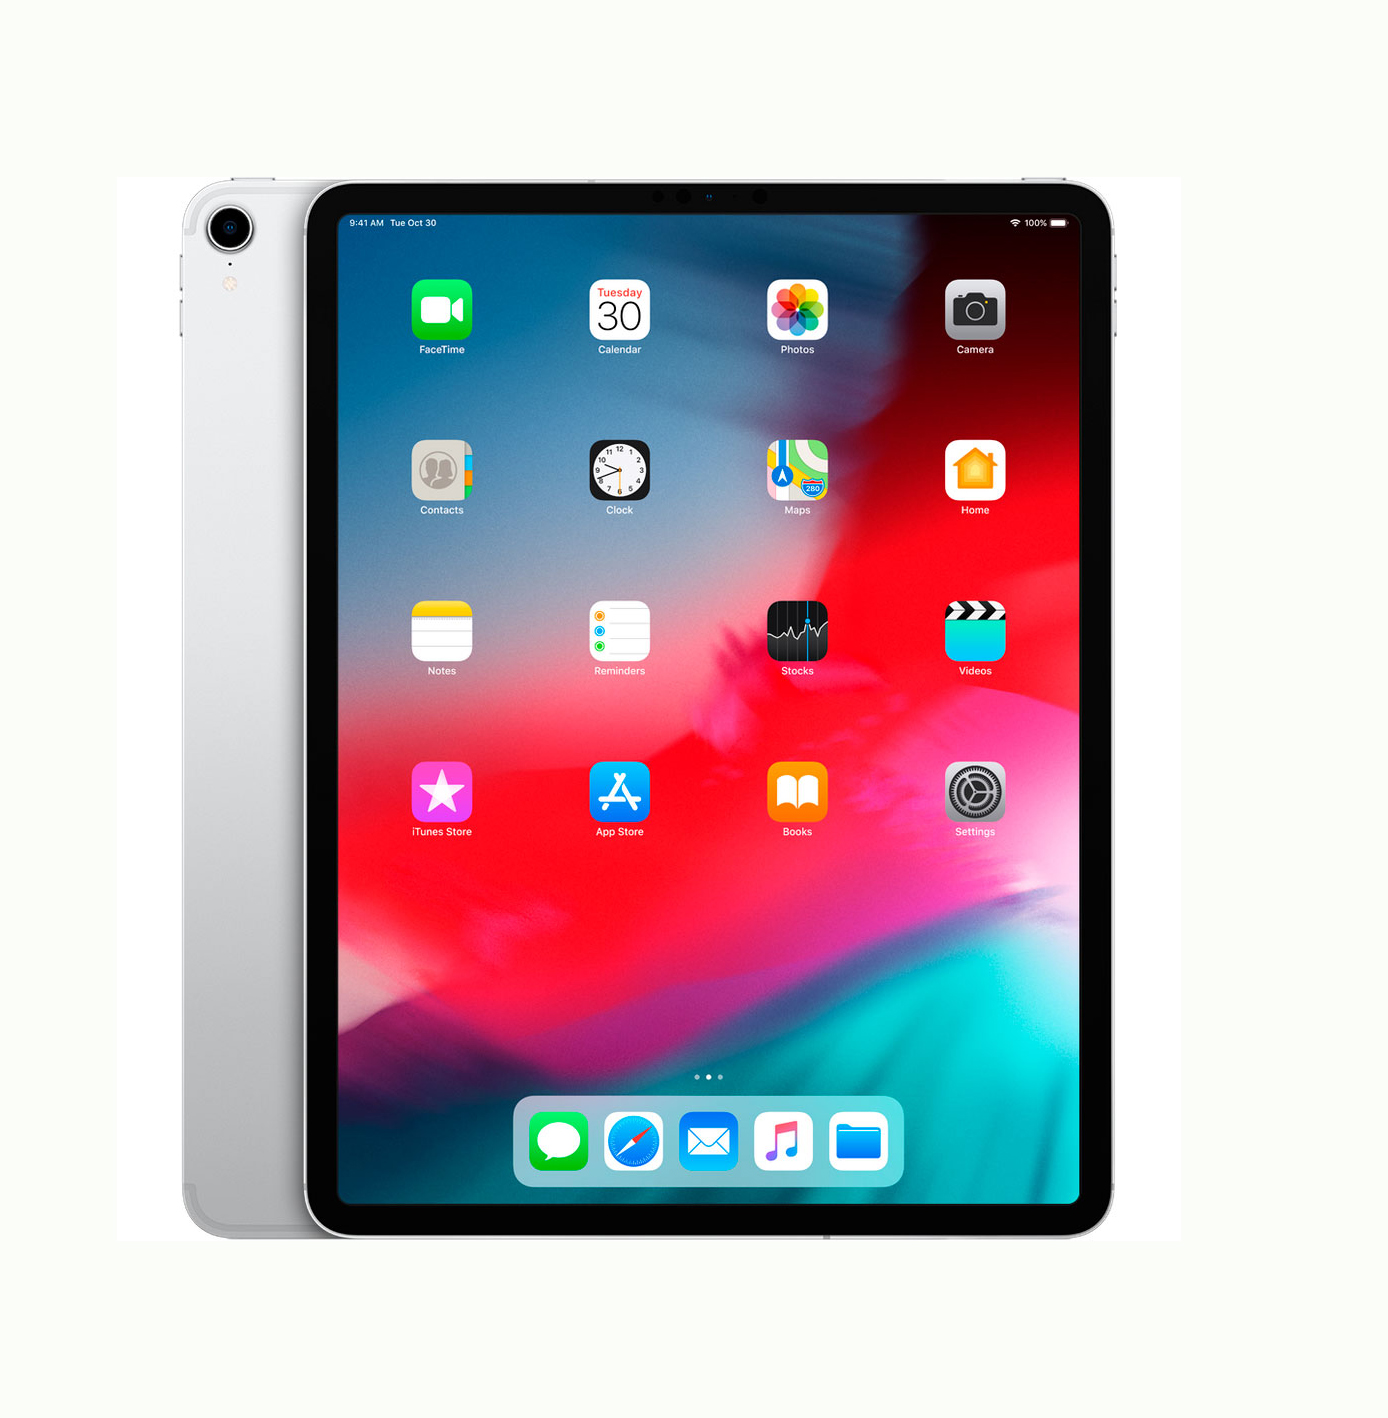 Apple iPad Pro 12.9 2018 Wi-Fi 64GB Silver (MTEM2)